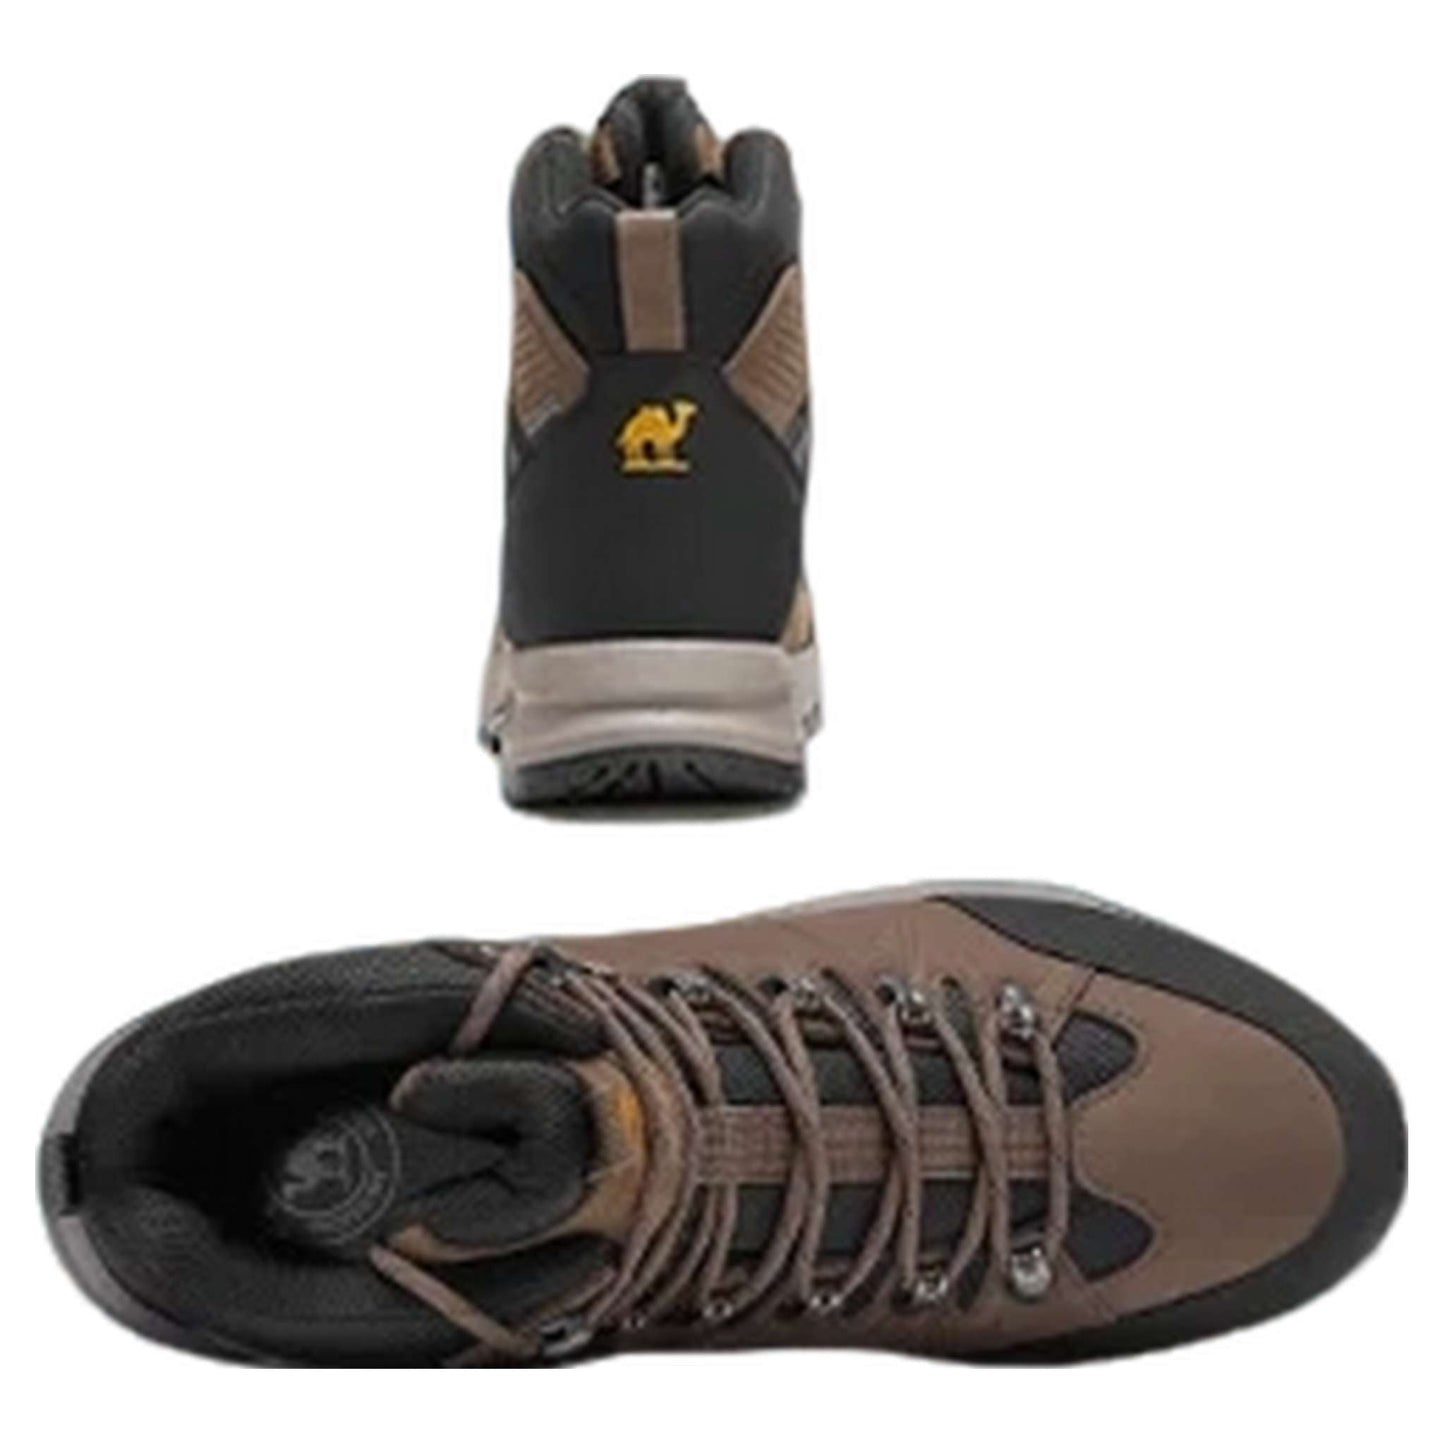 Men's Waterproof Hiking Boots – Non-Slip Trekking Footwear with Durable Vibram Soles